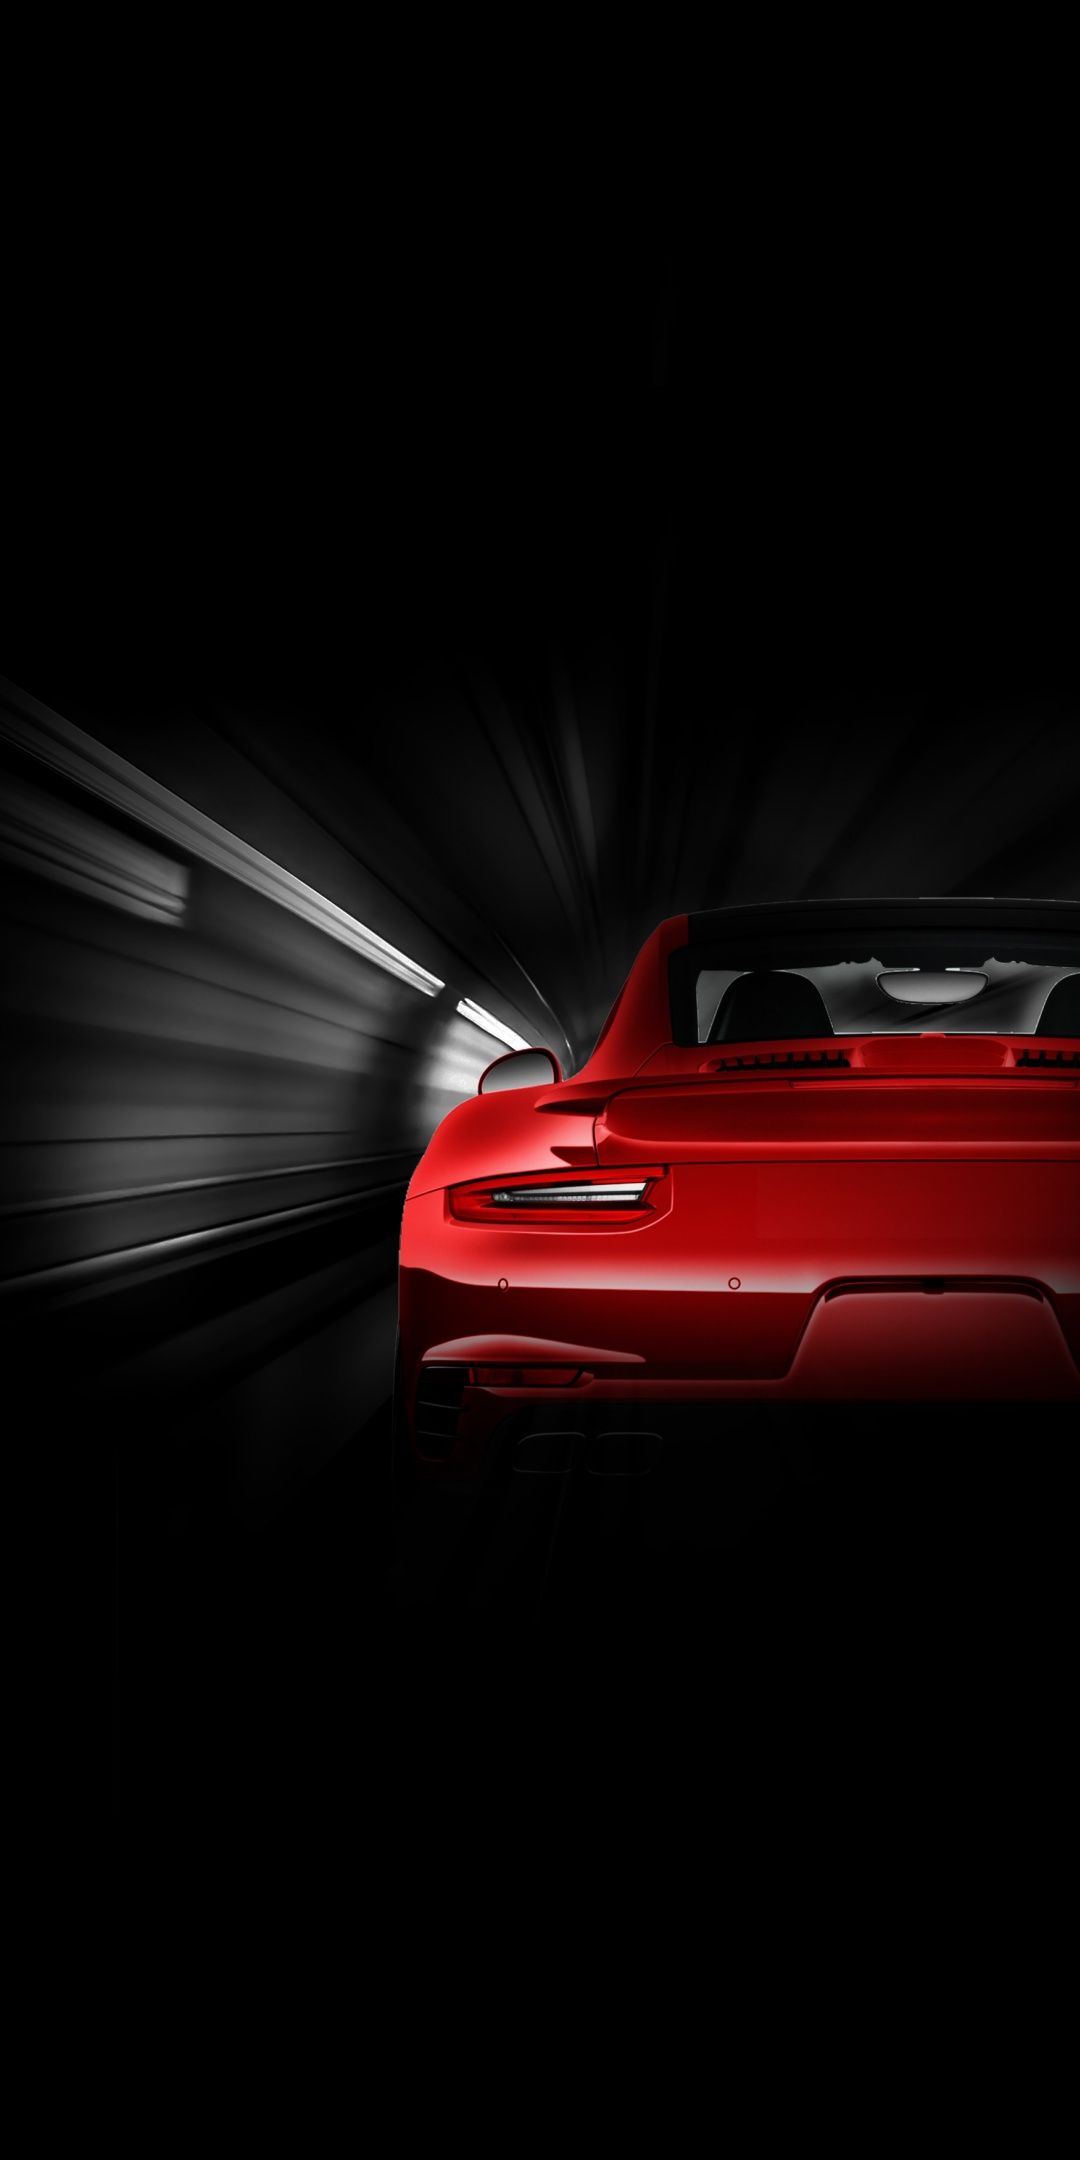 Porsche Rear Tail Lights Wallpaper Light